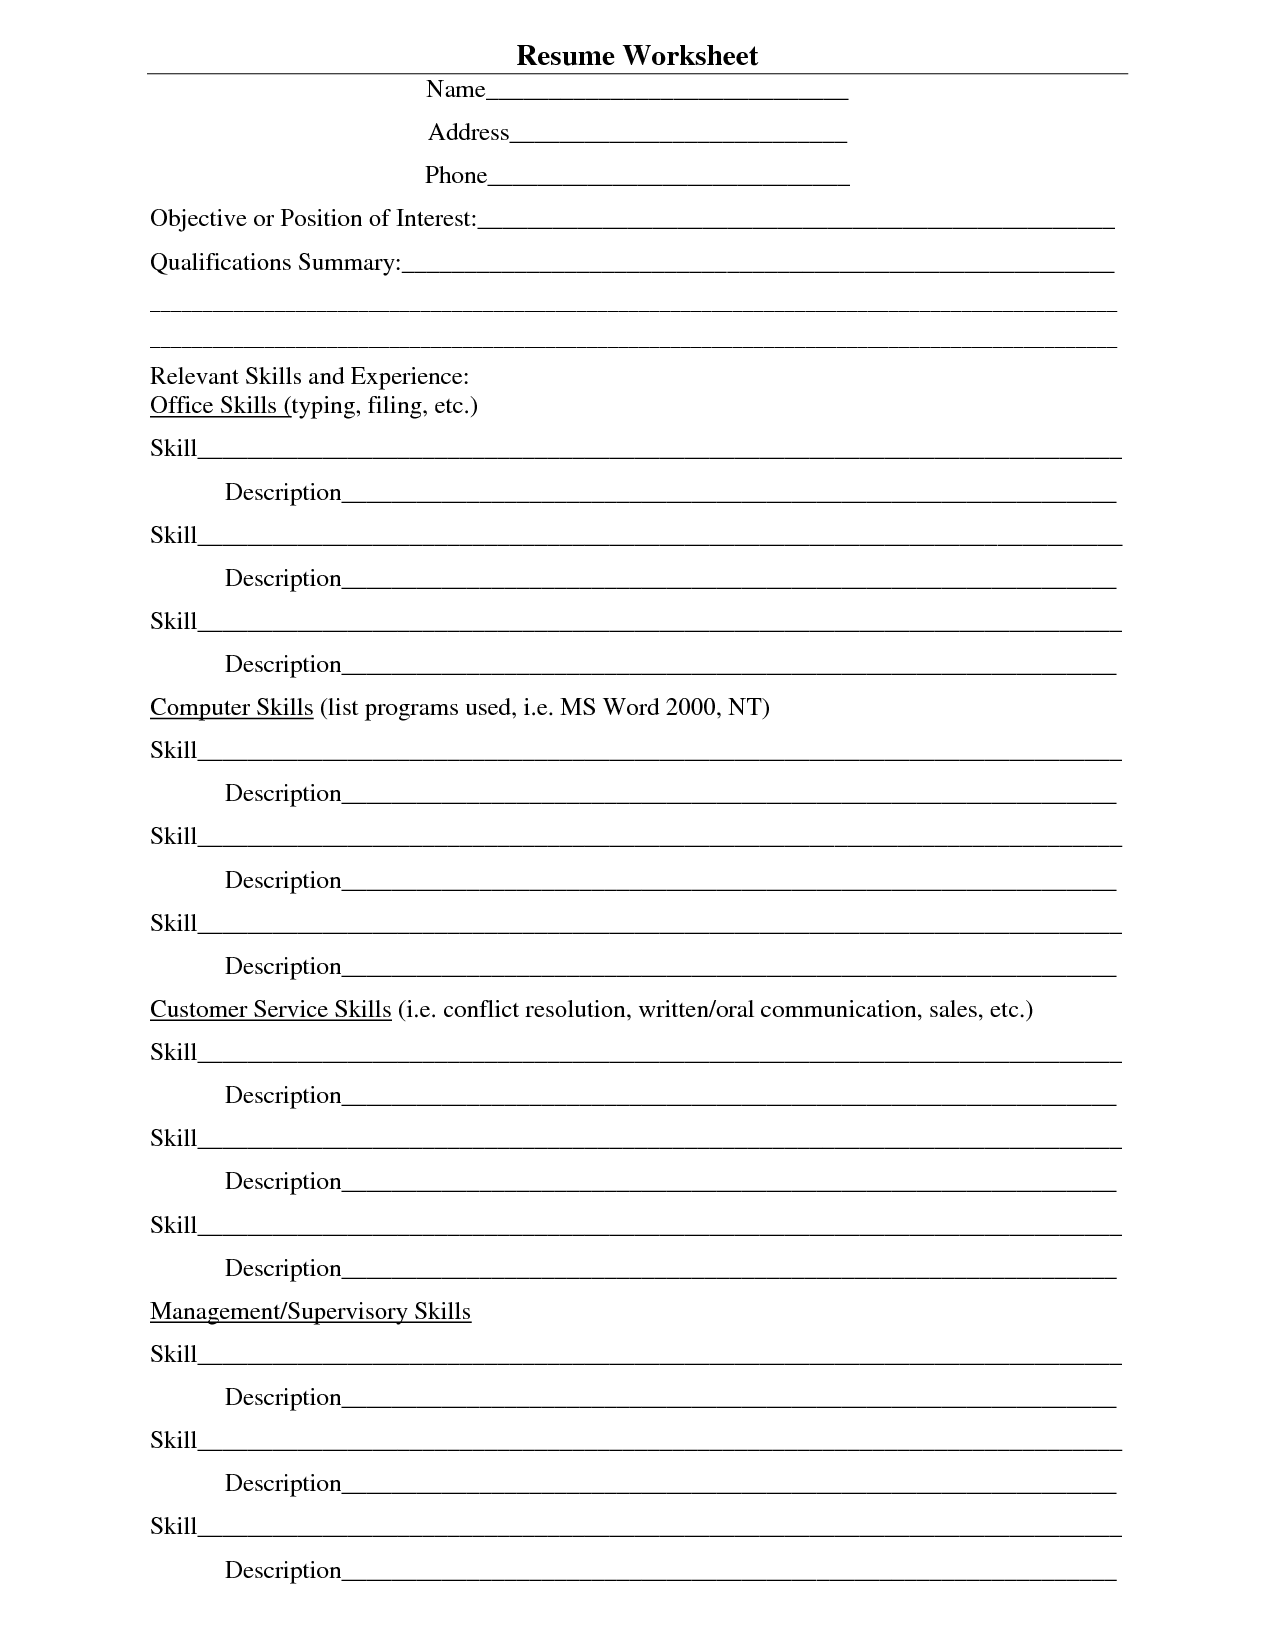 building a resume worksheet